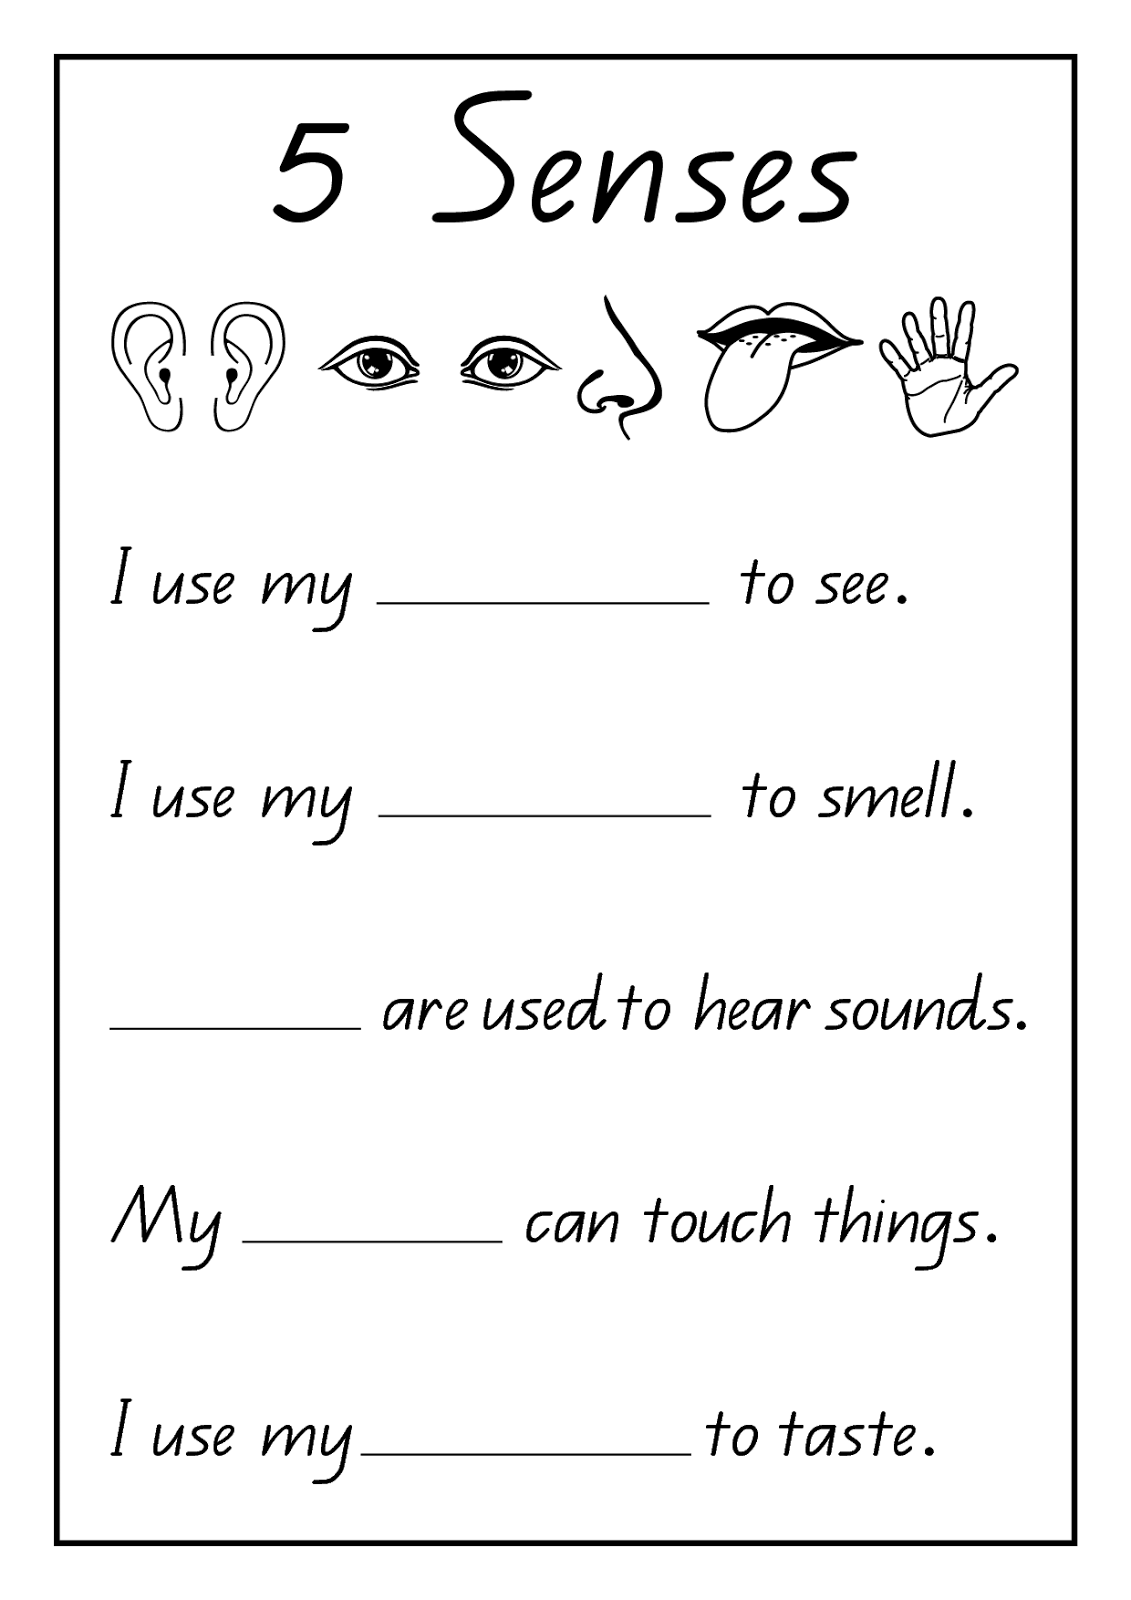 Five Senses Worksheet for Grade 1